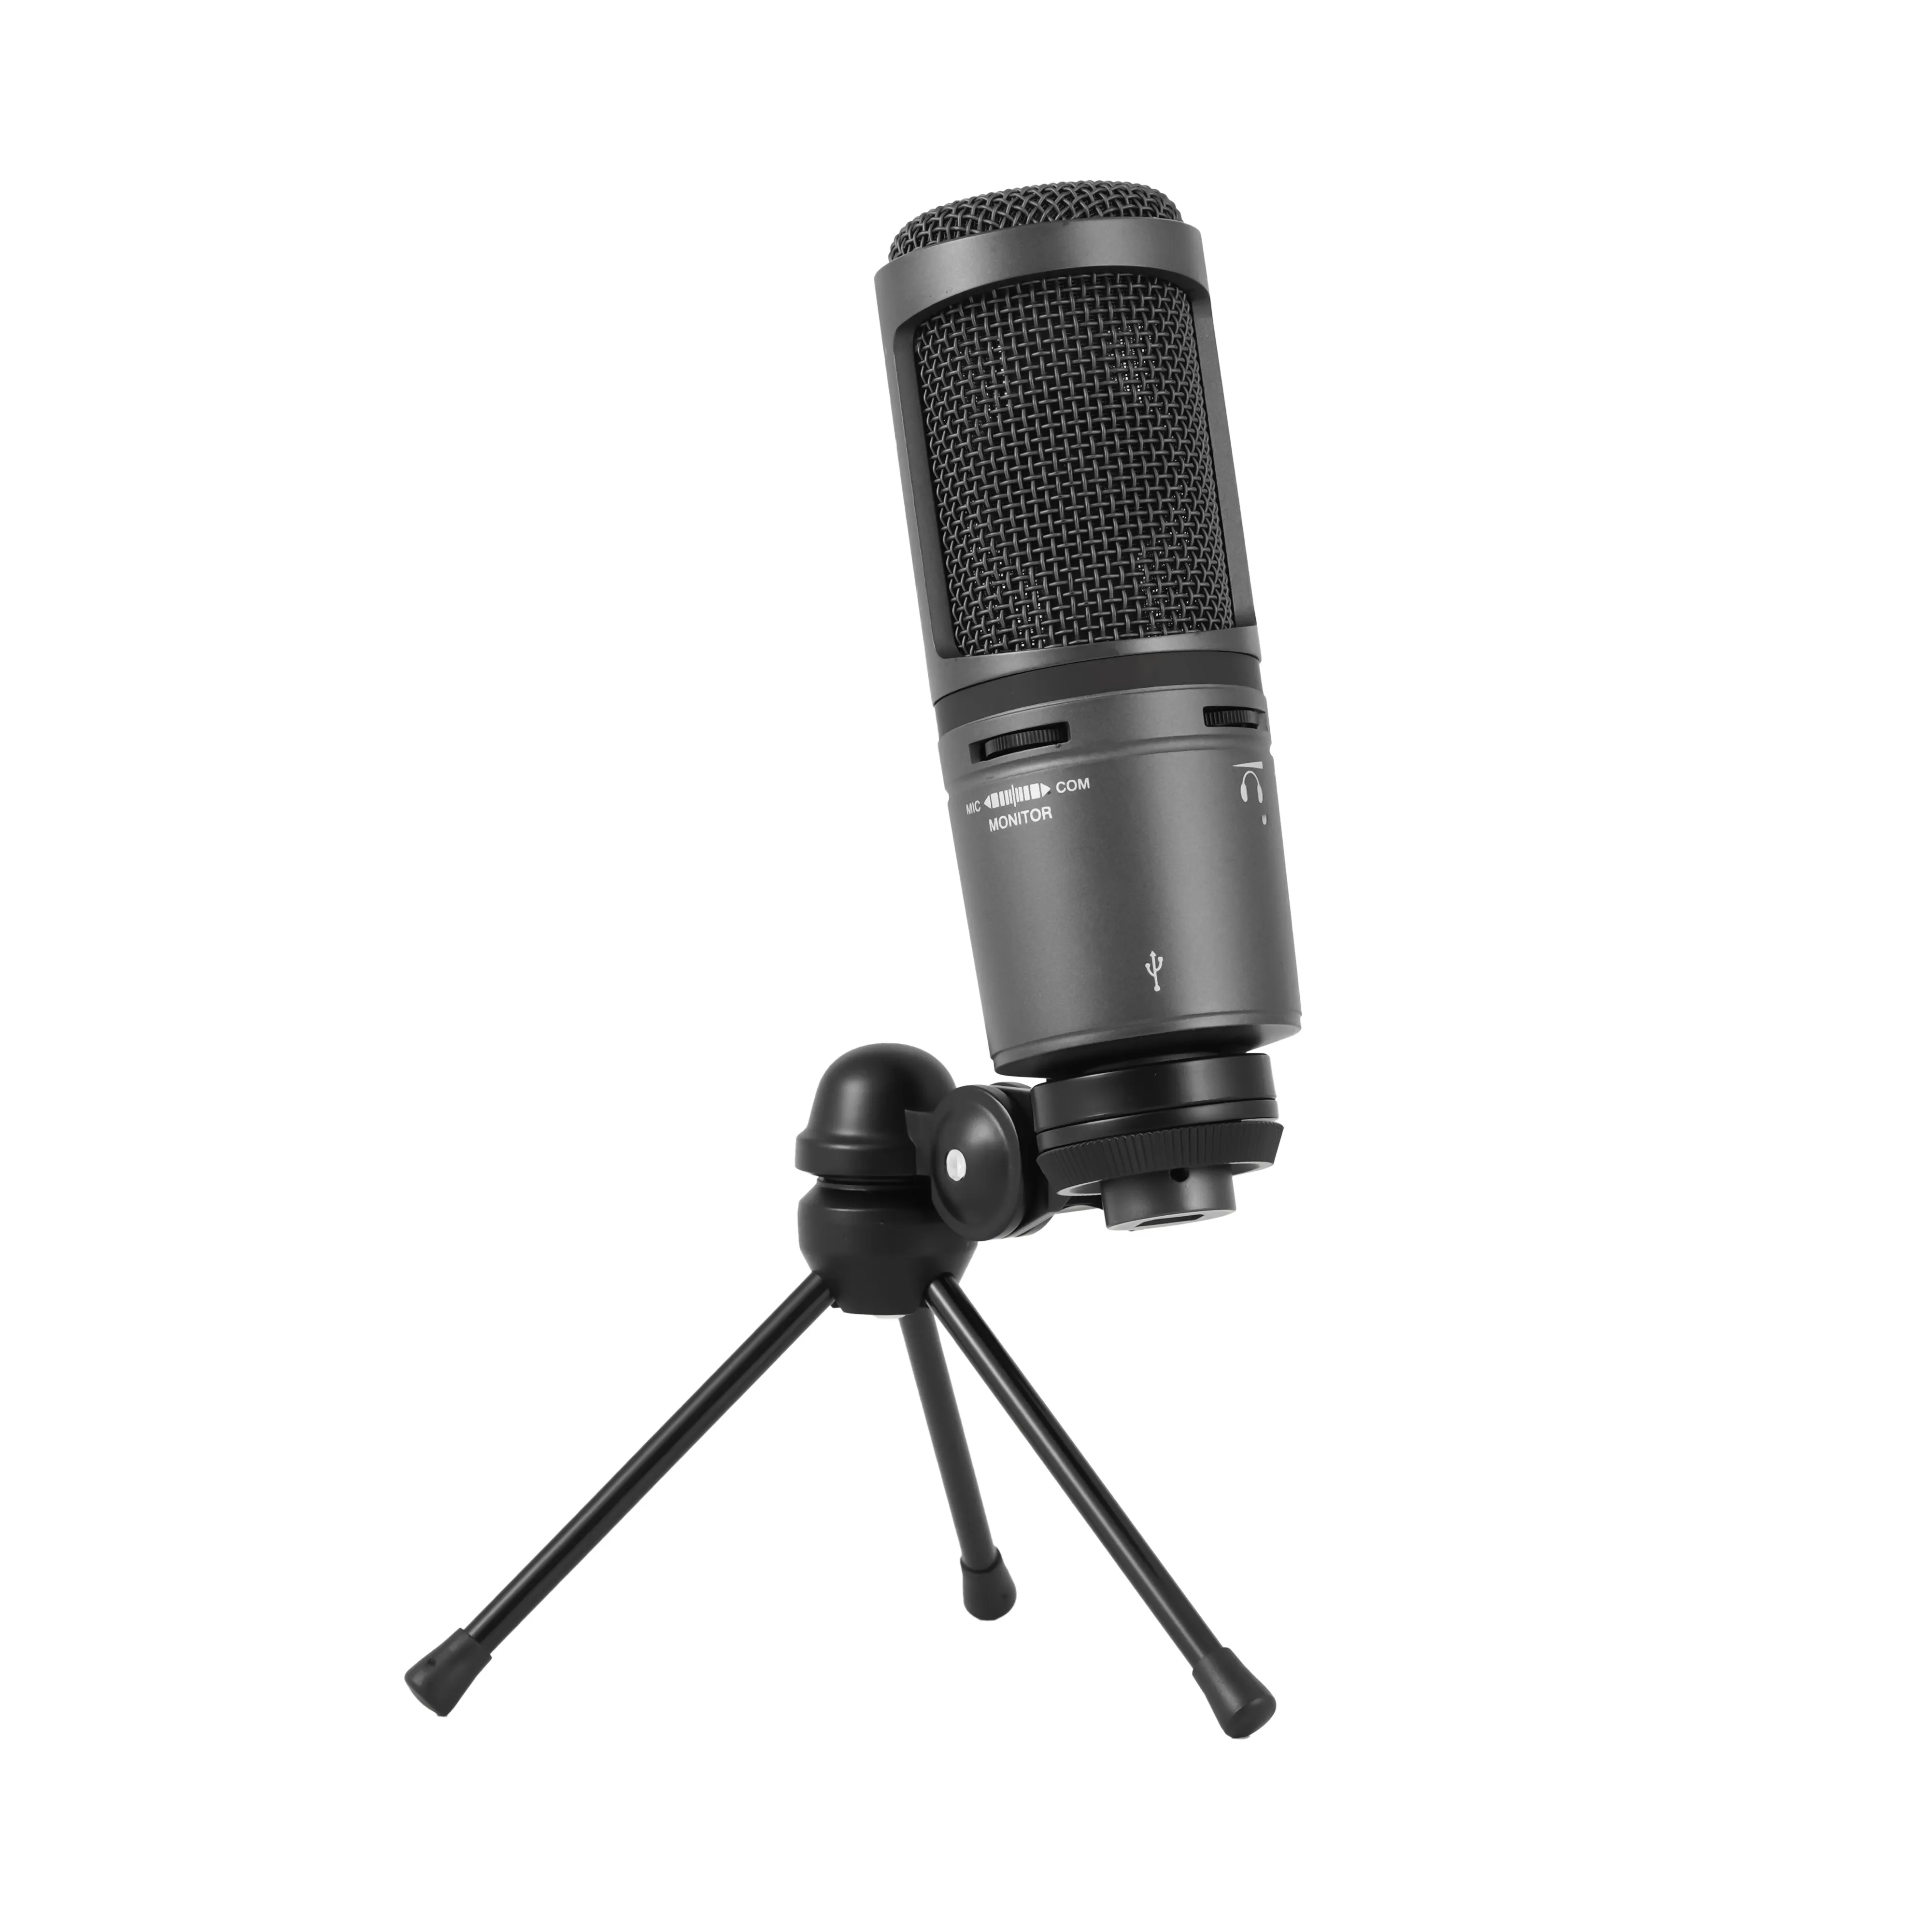 Microfone de capacitor pequeno AT2020USB Usado para gravar videogames ao vivo em estúdio, com suporte de cabo USB, YHS AT2020 USB